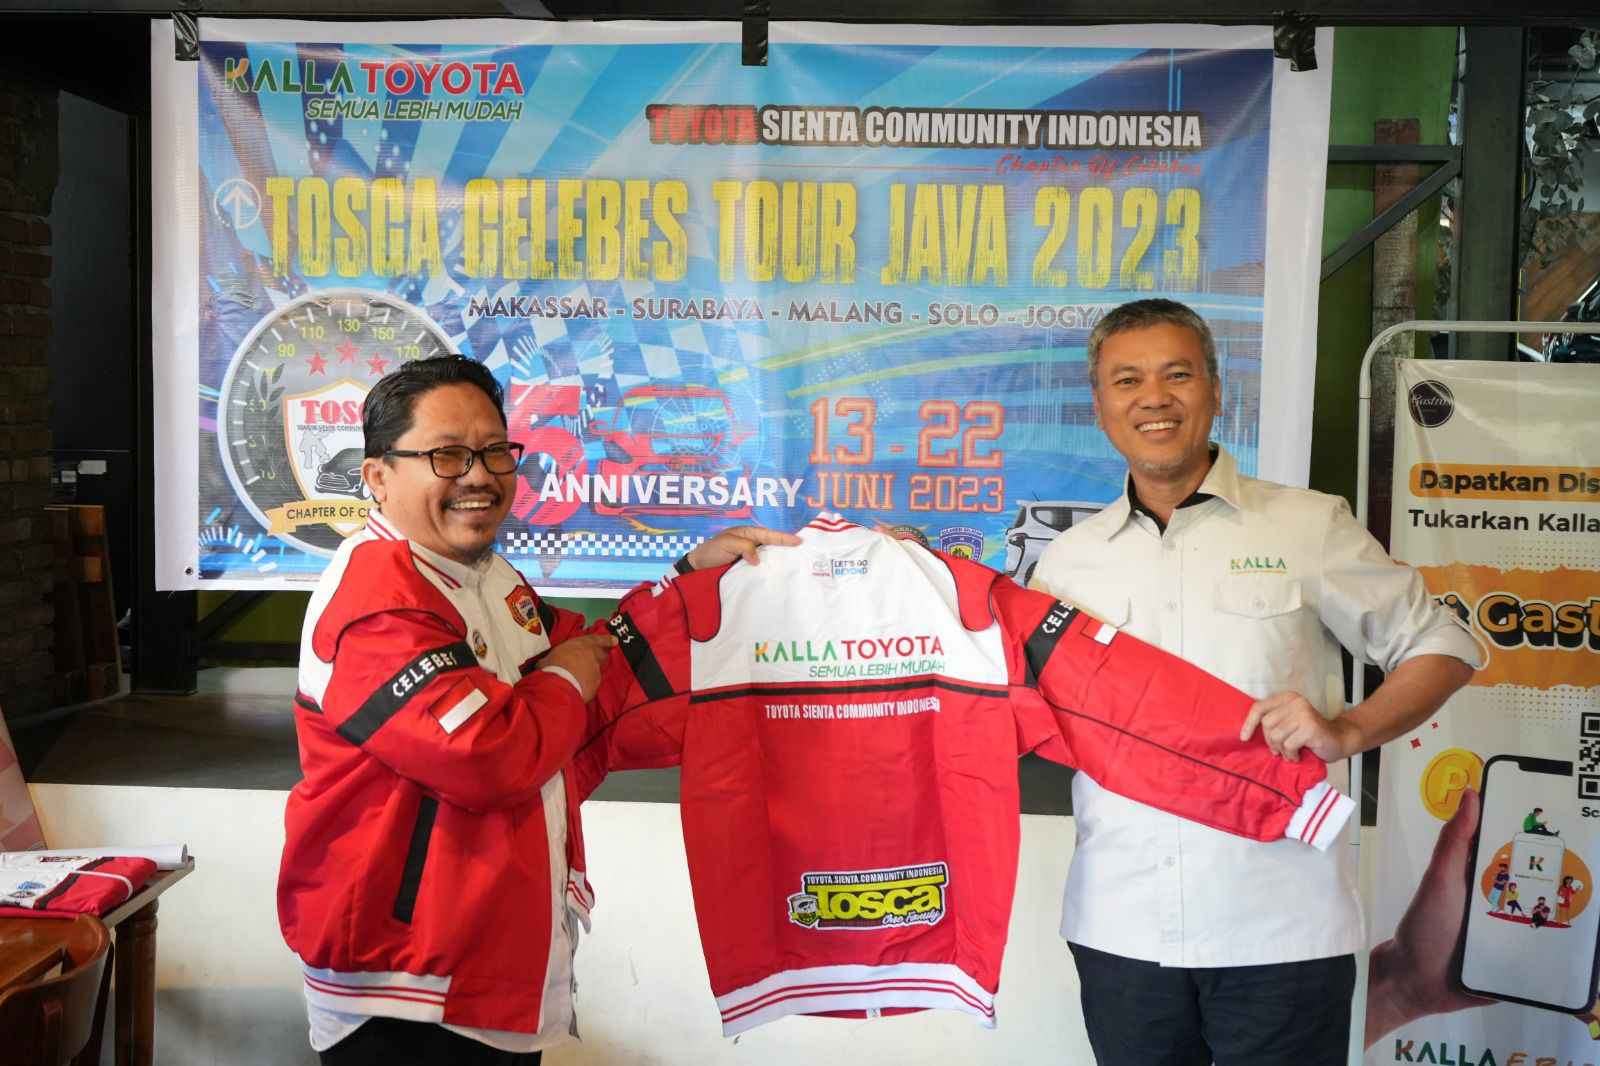 Rayakan Anniversary Ke-5, Komunitas TOSCA Chapter of Celebes Touring ke Jawa